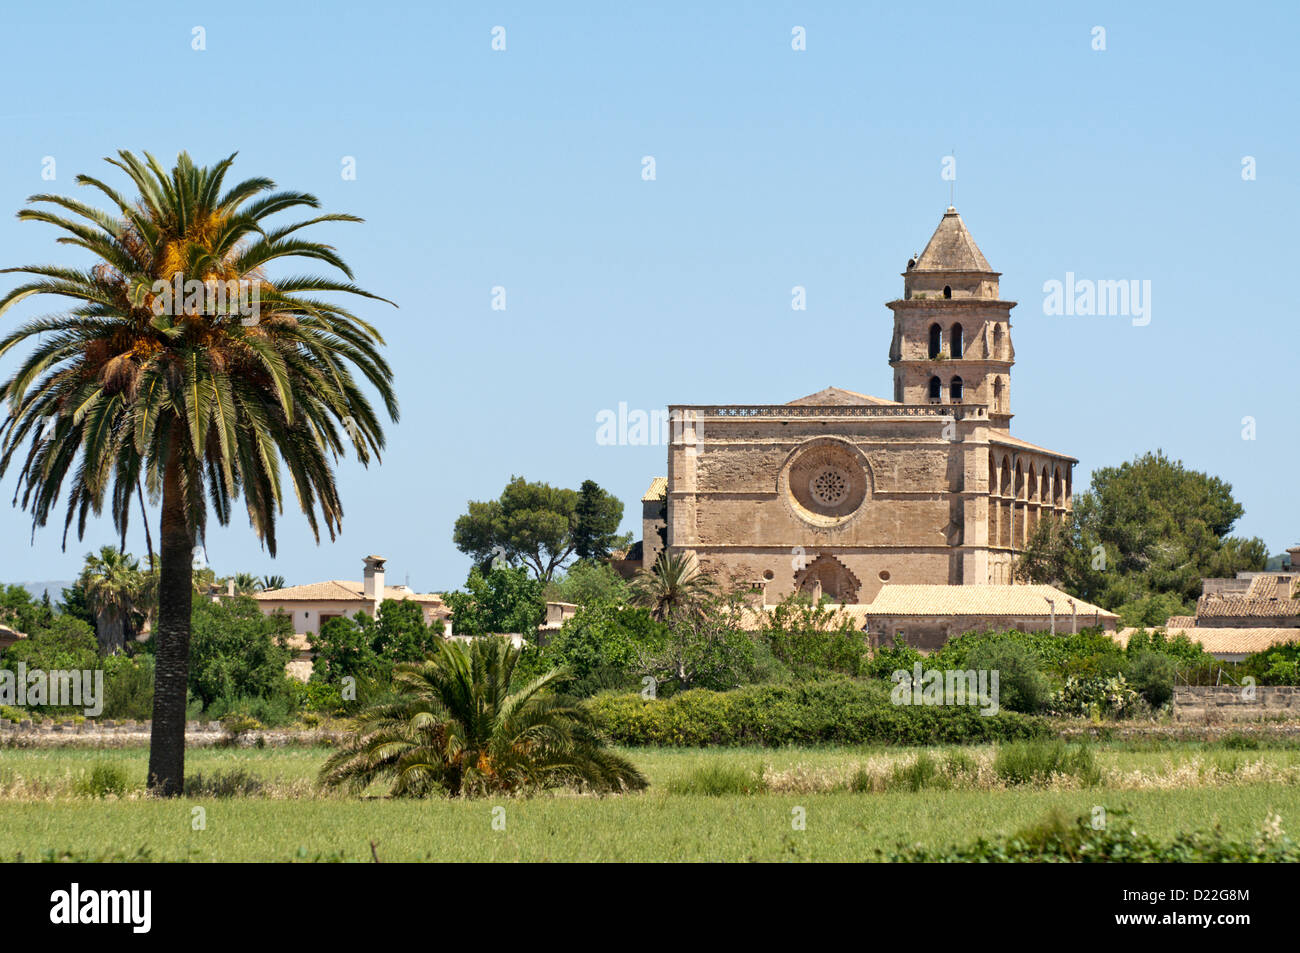 Petra, Iglesia de San Pedro, Mallorca (Majorca) Stock Photo